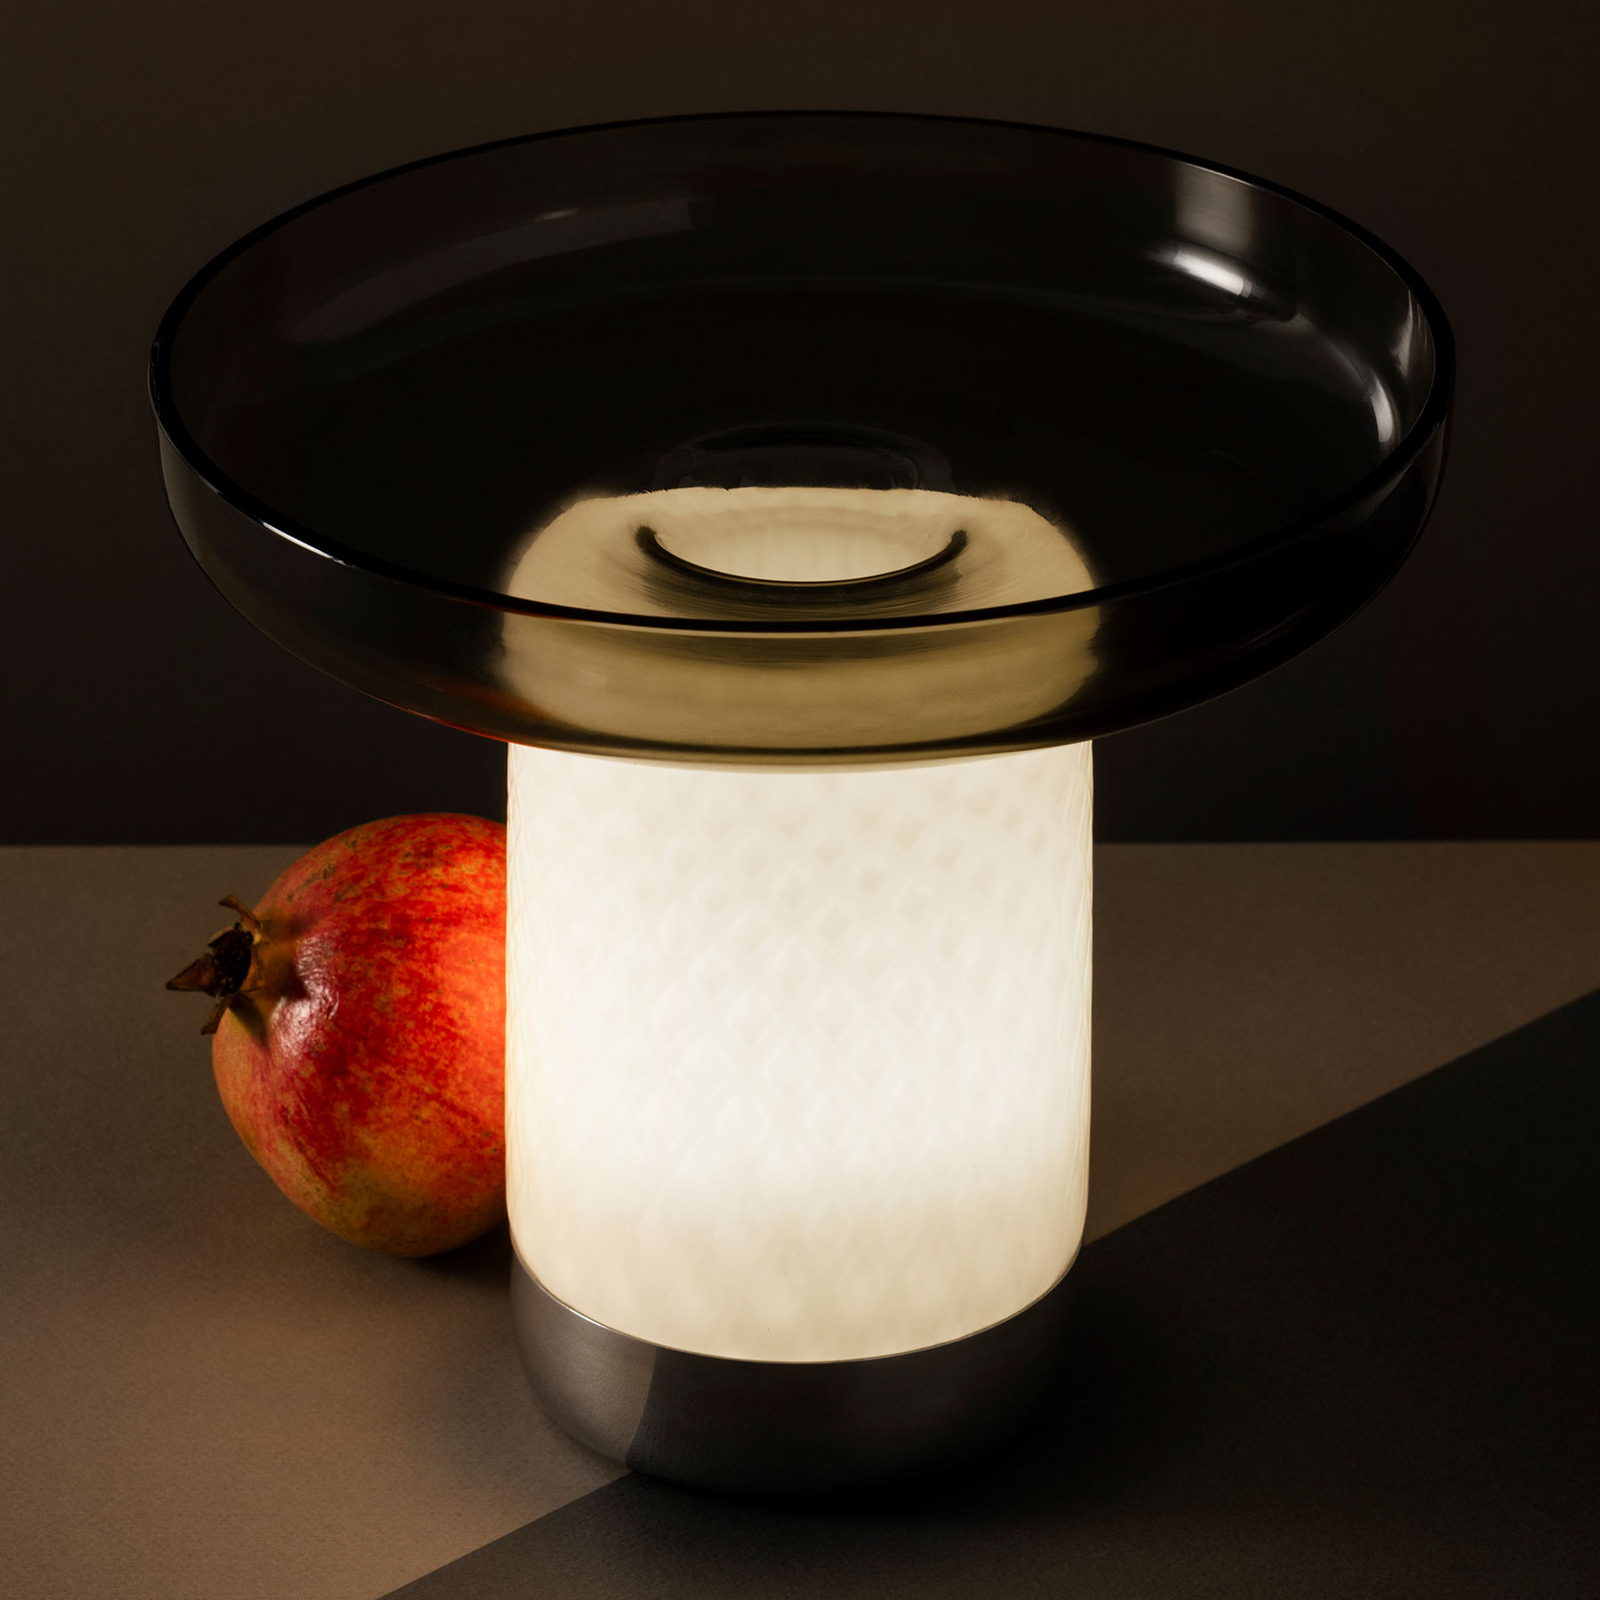 Artemide Bontà LED table lamp, grey dish